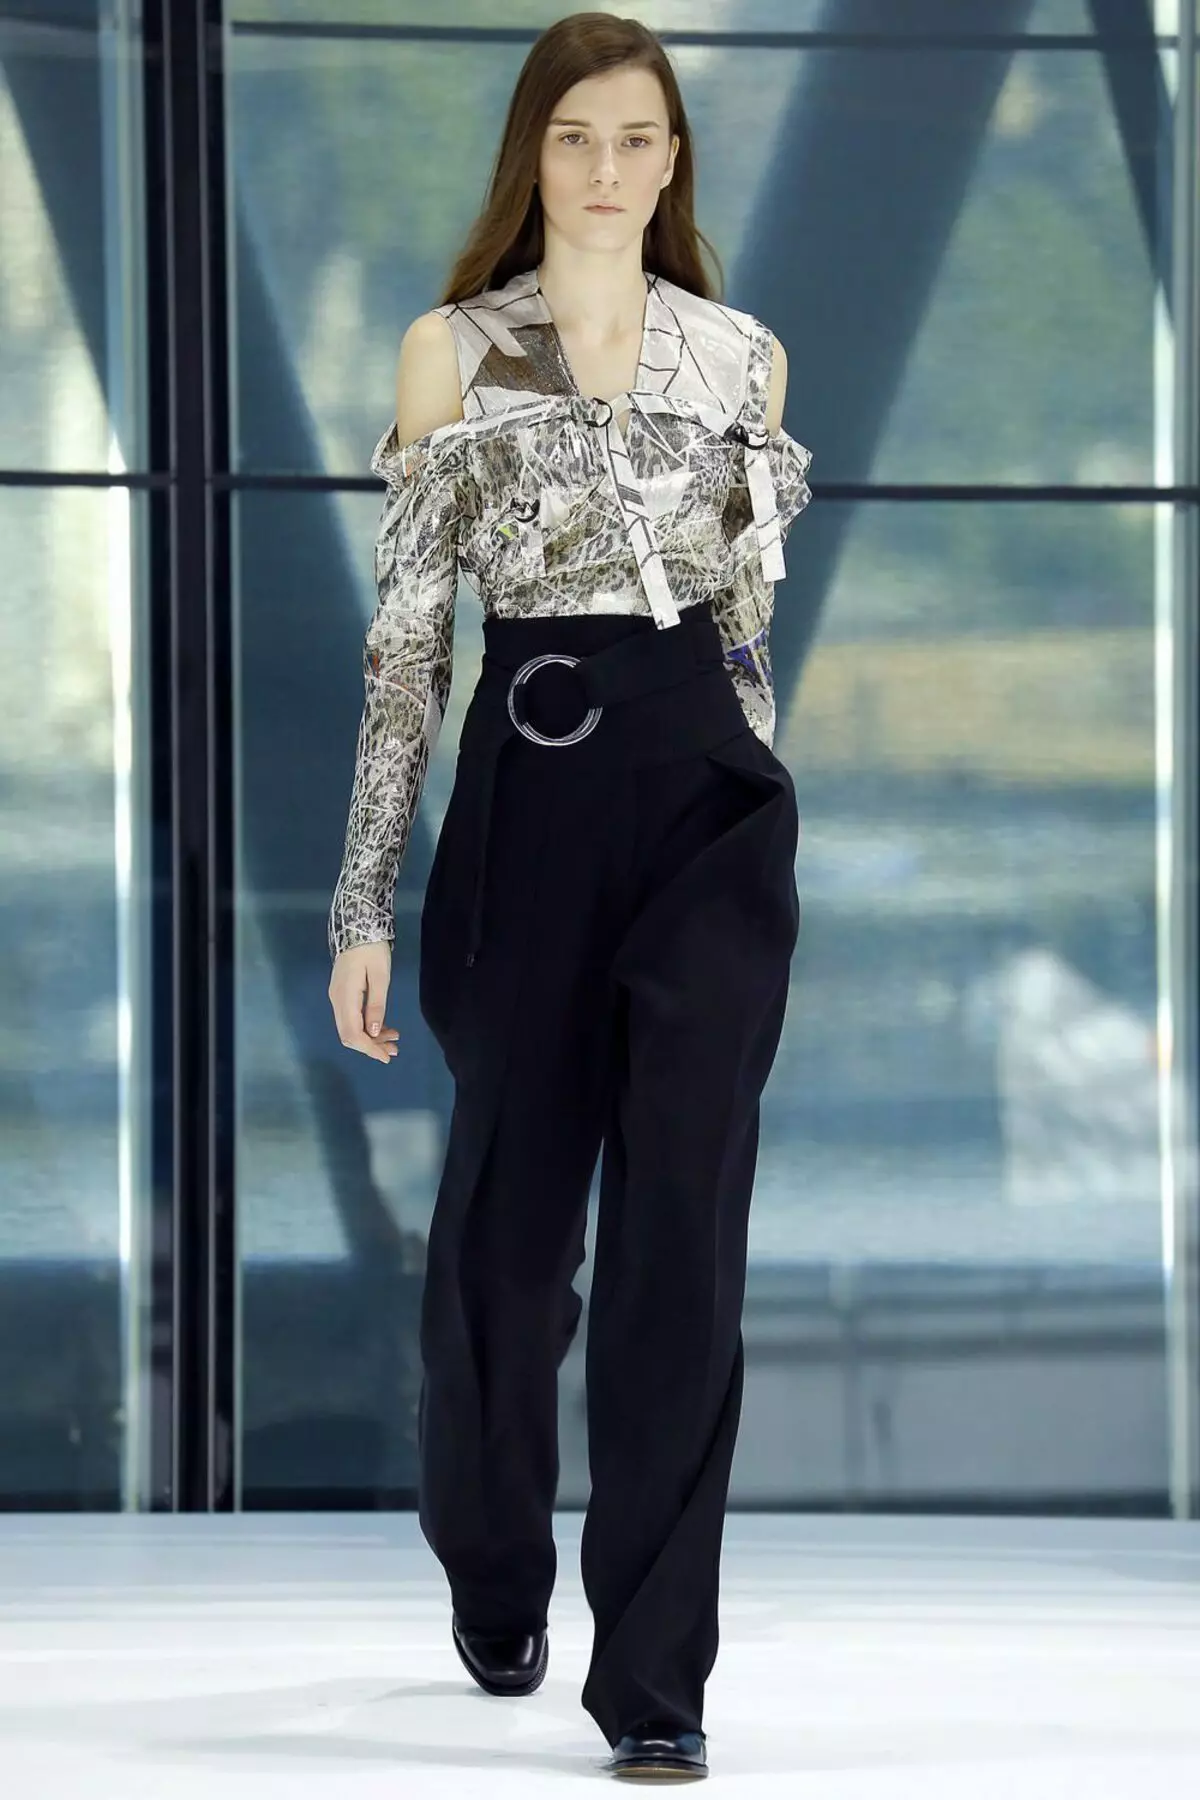 Pantikên Fashion 2021: Modelên Stylish Women, Trendên Fashion 917_407